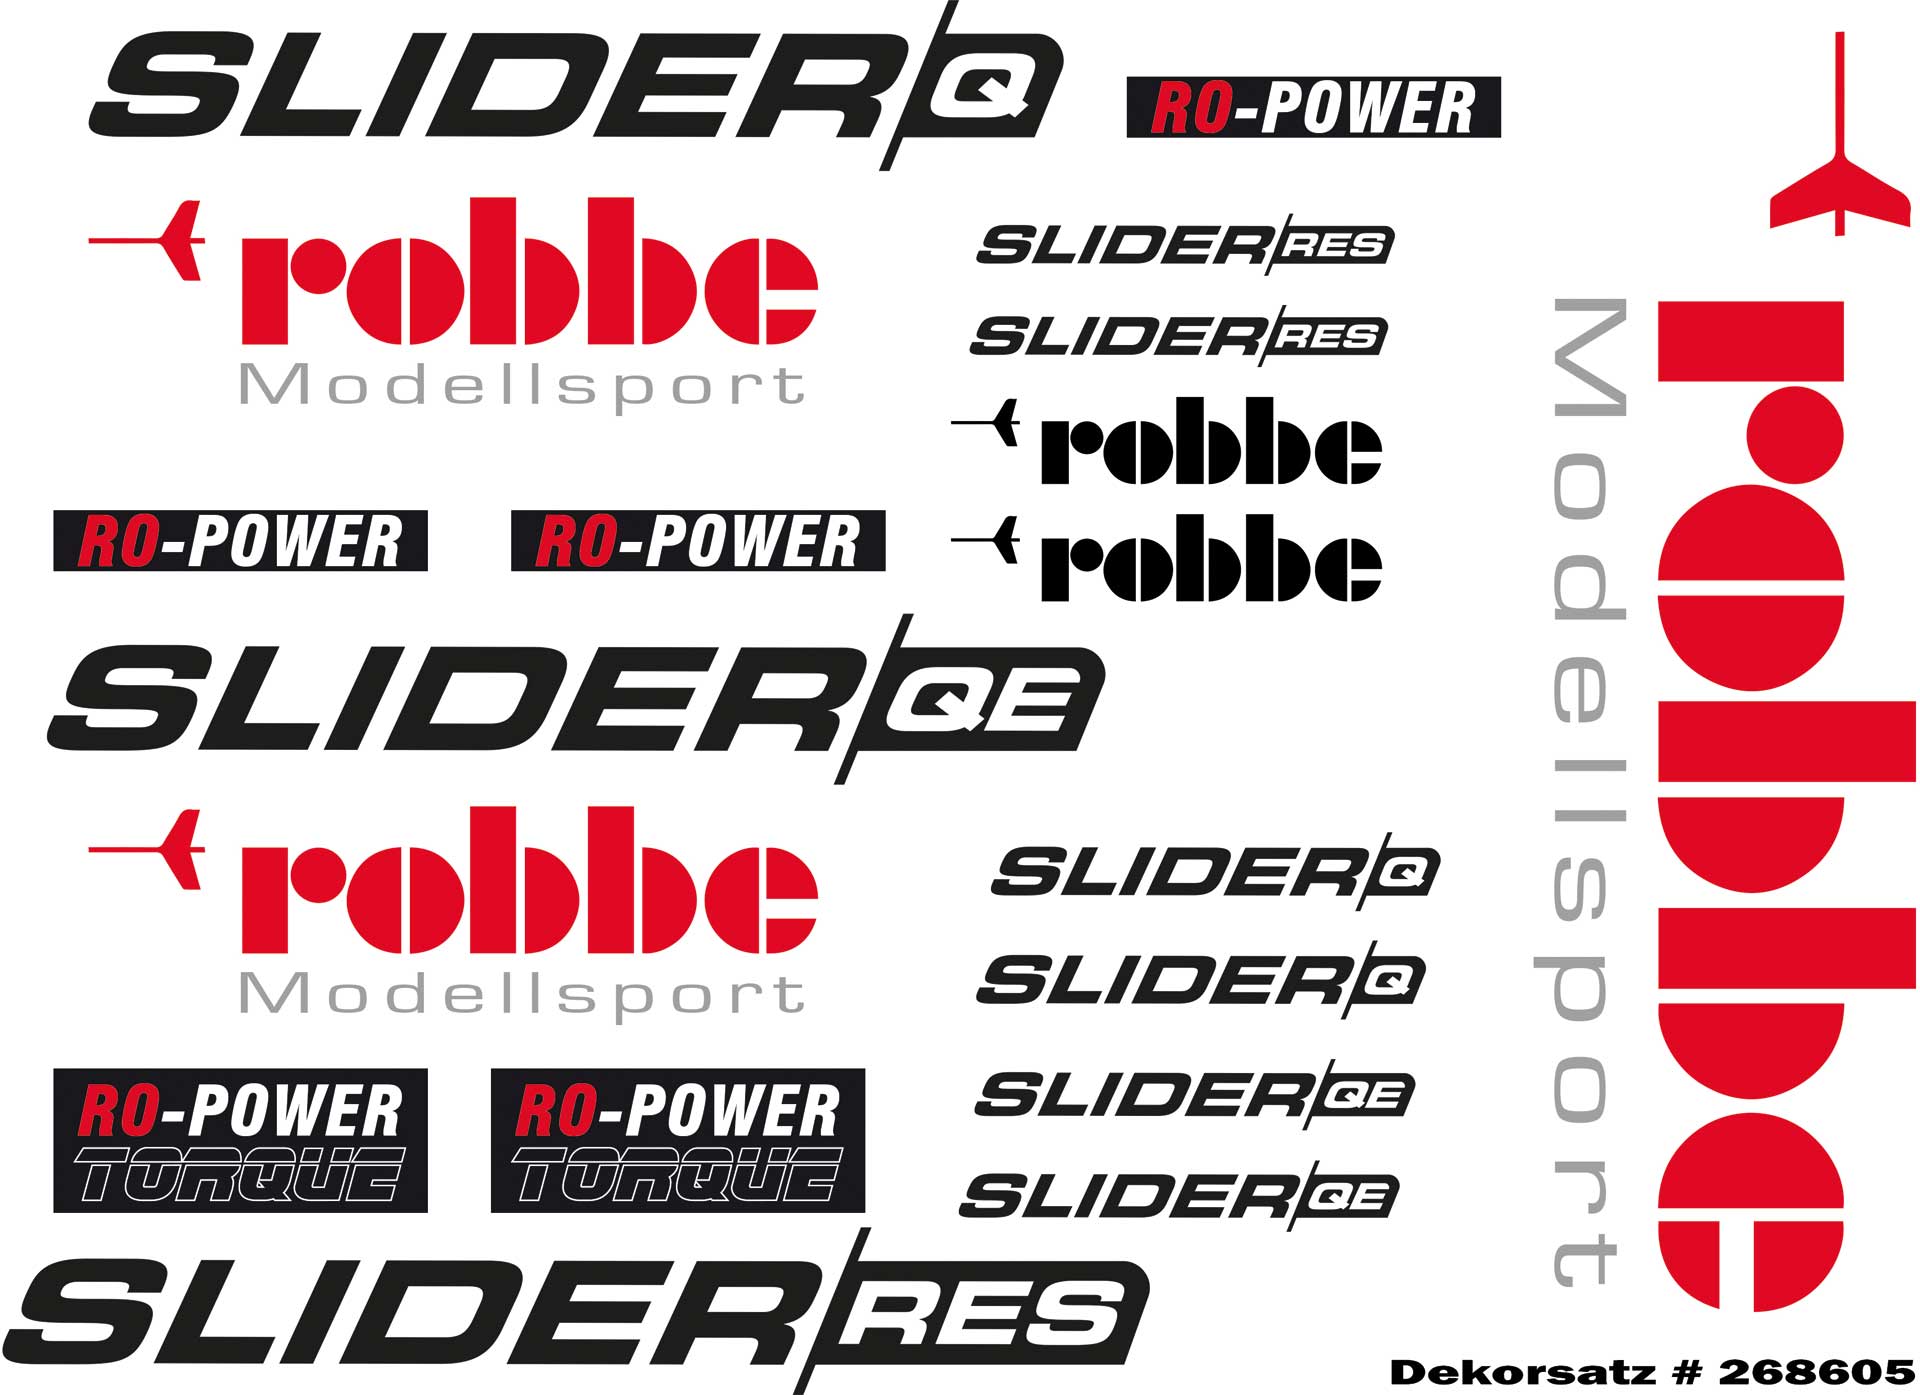 Robbe Modellsport Dekorsatz Slider QE / Q / R.E.S.